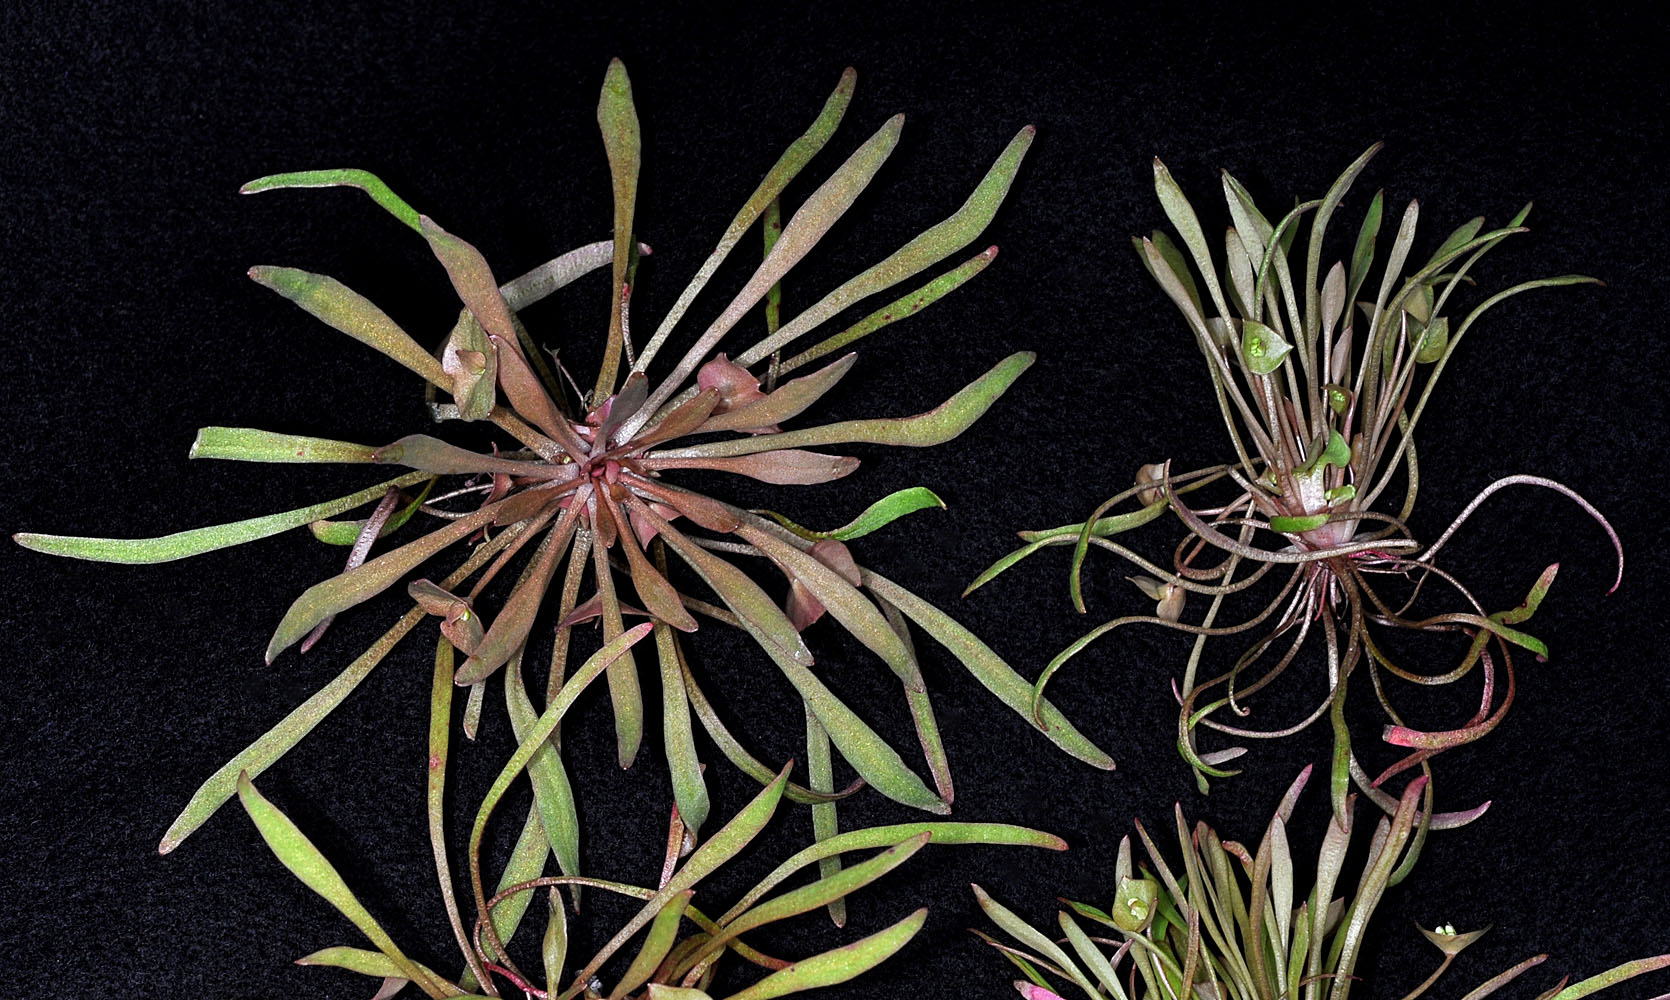 Flora of Eastern Washington Image: Claytonia parviflora